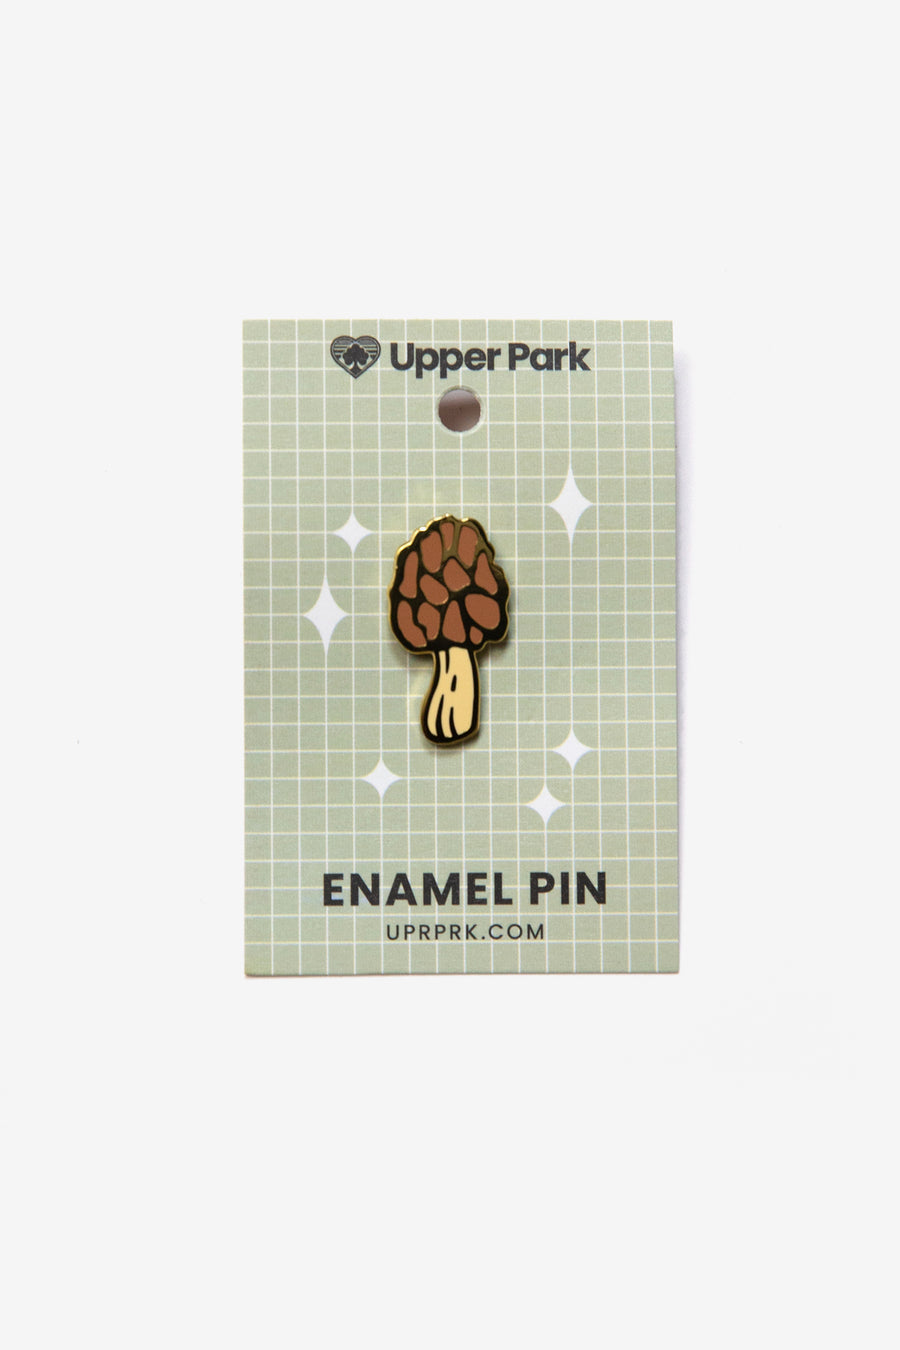 Morel Mushroom Enamel Pin